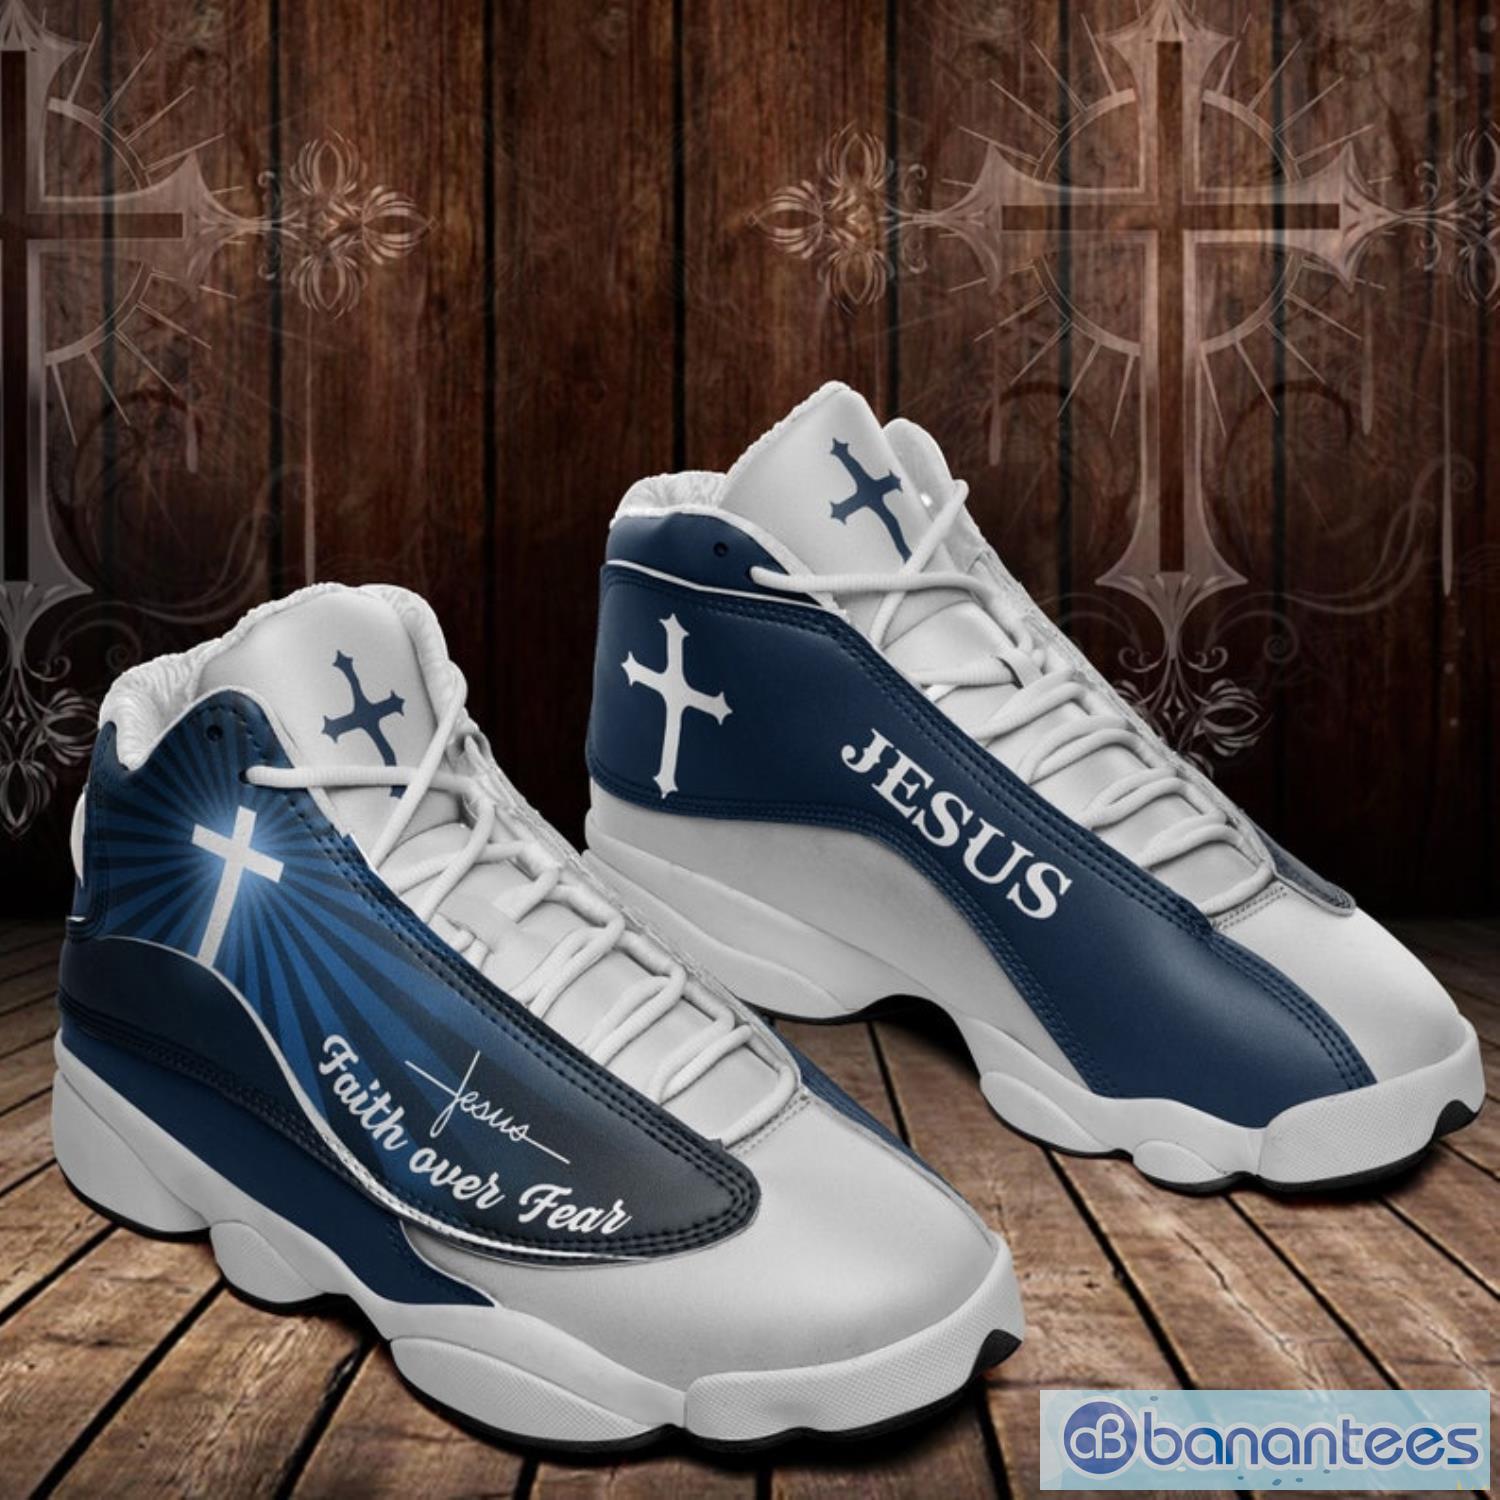 Jesus Sneakers Air Jordan 13 Shoes 